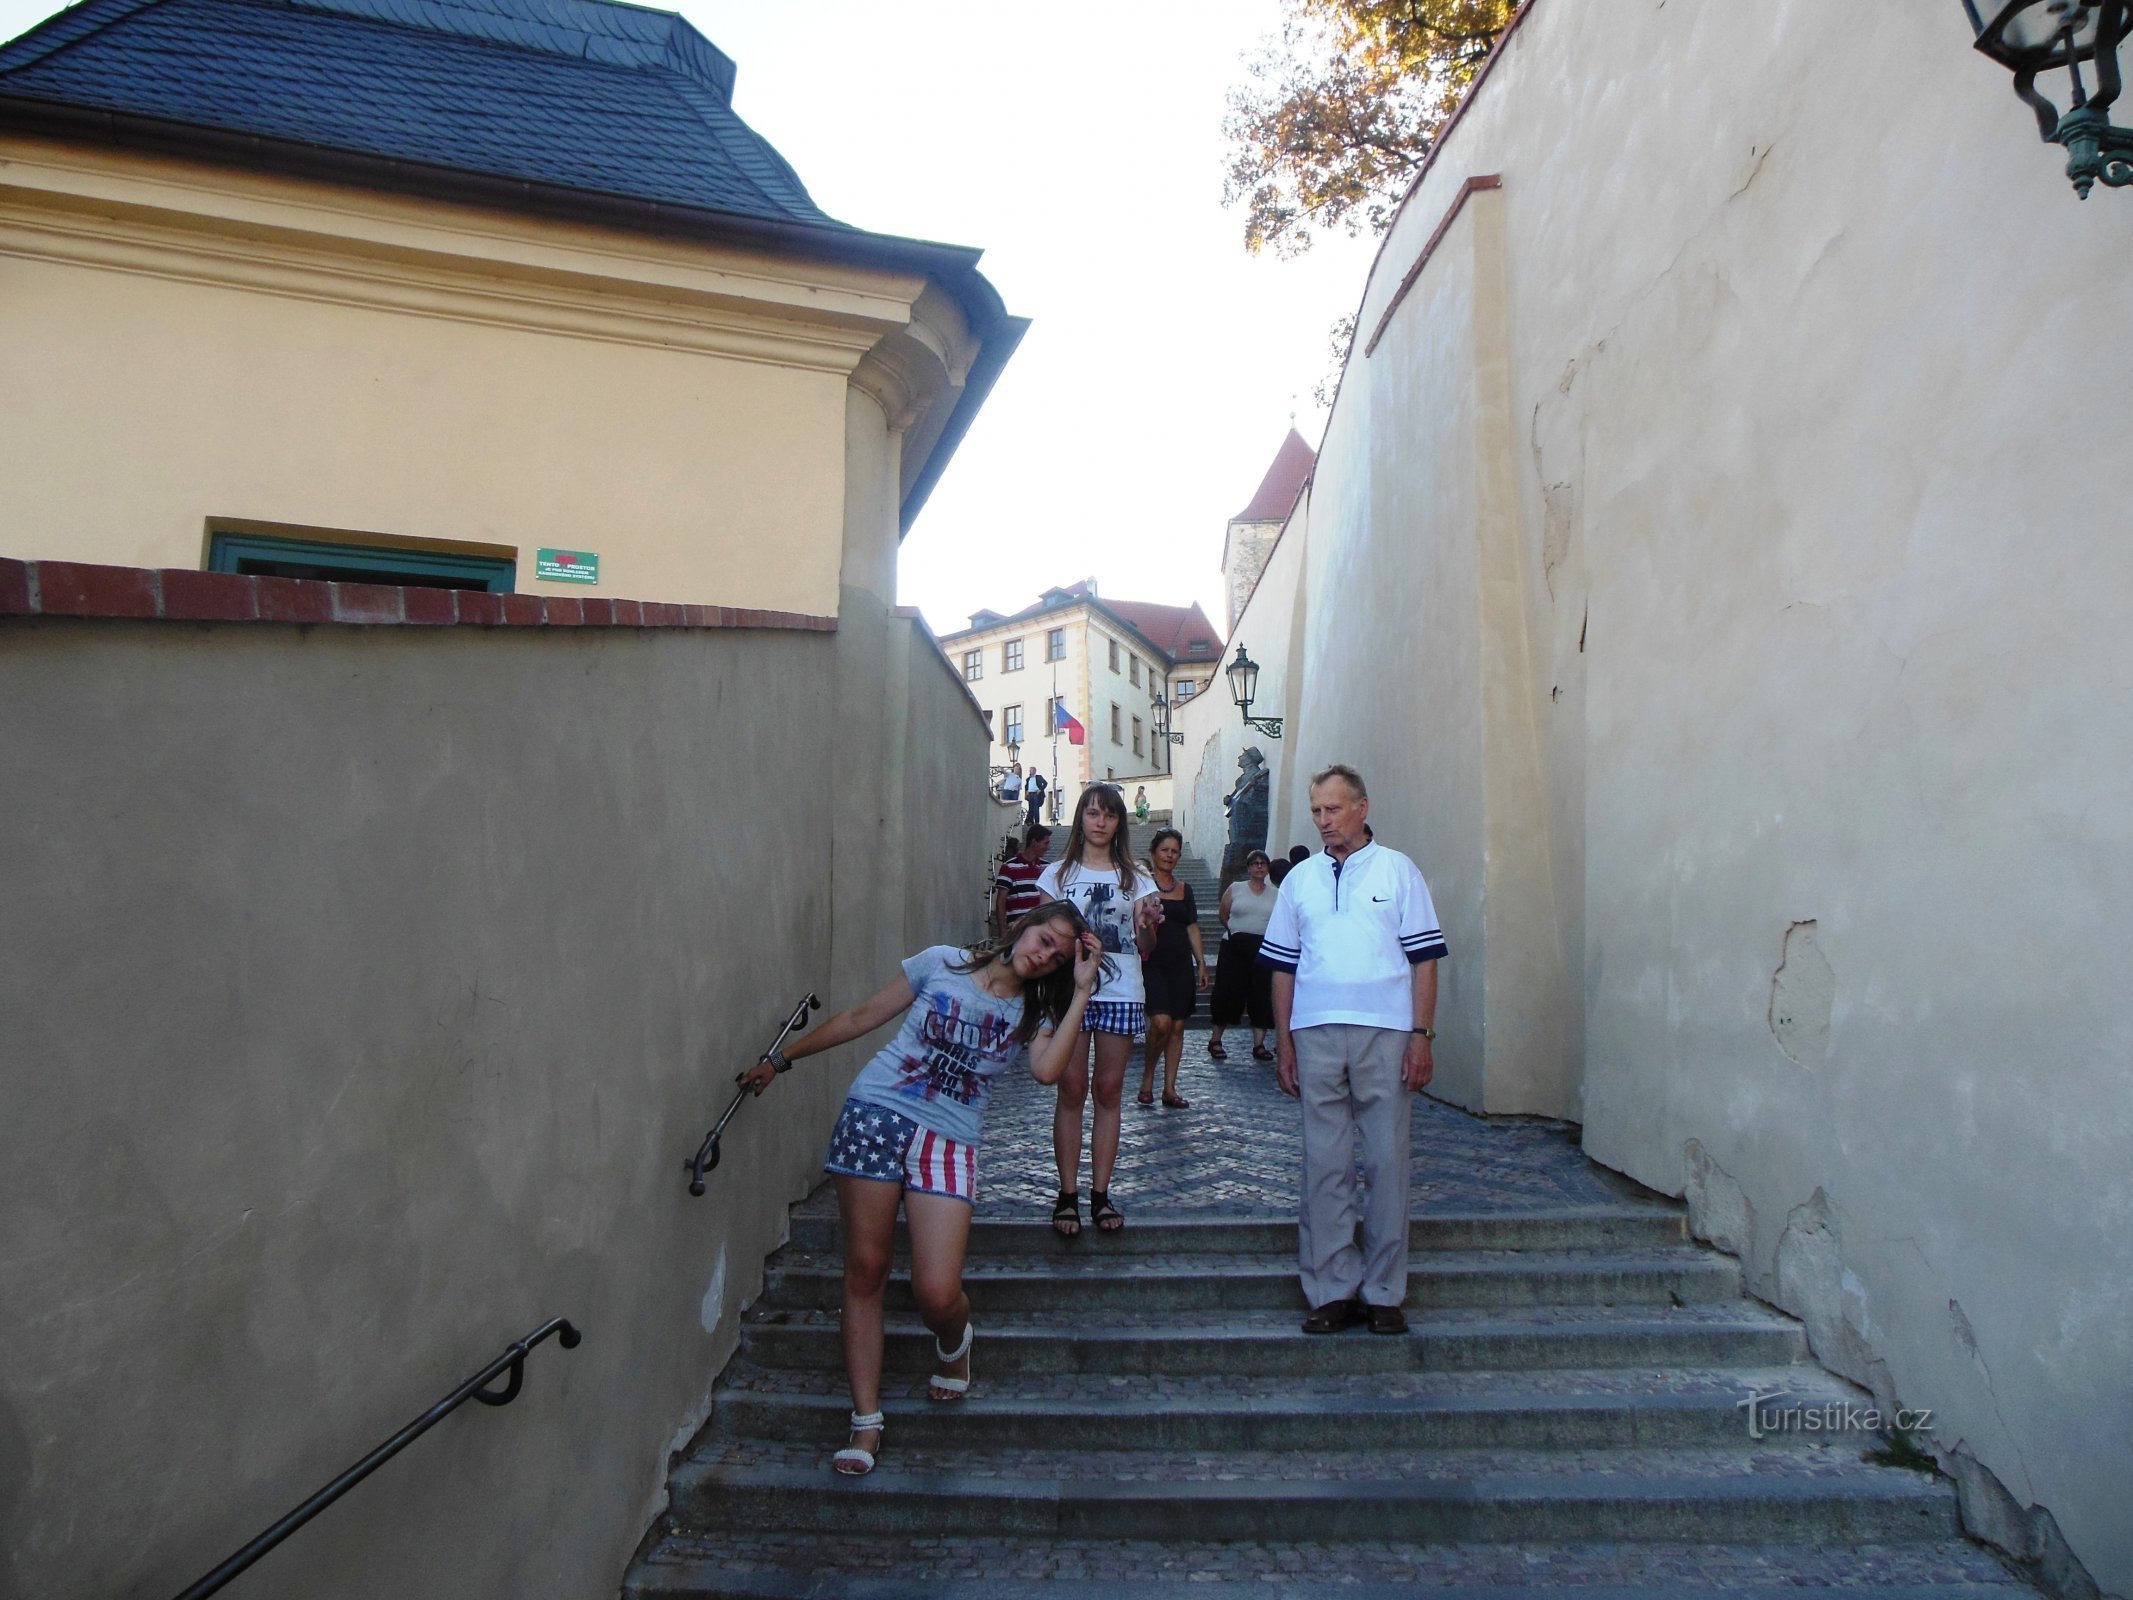 Montez les escaliers du vieux château, montez les escaliers de pierre... comme chantait Waldemar Matuška